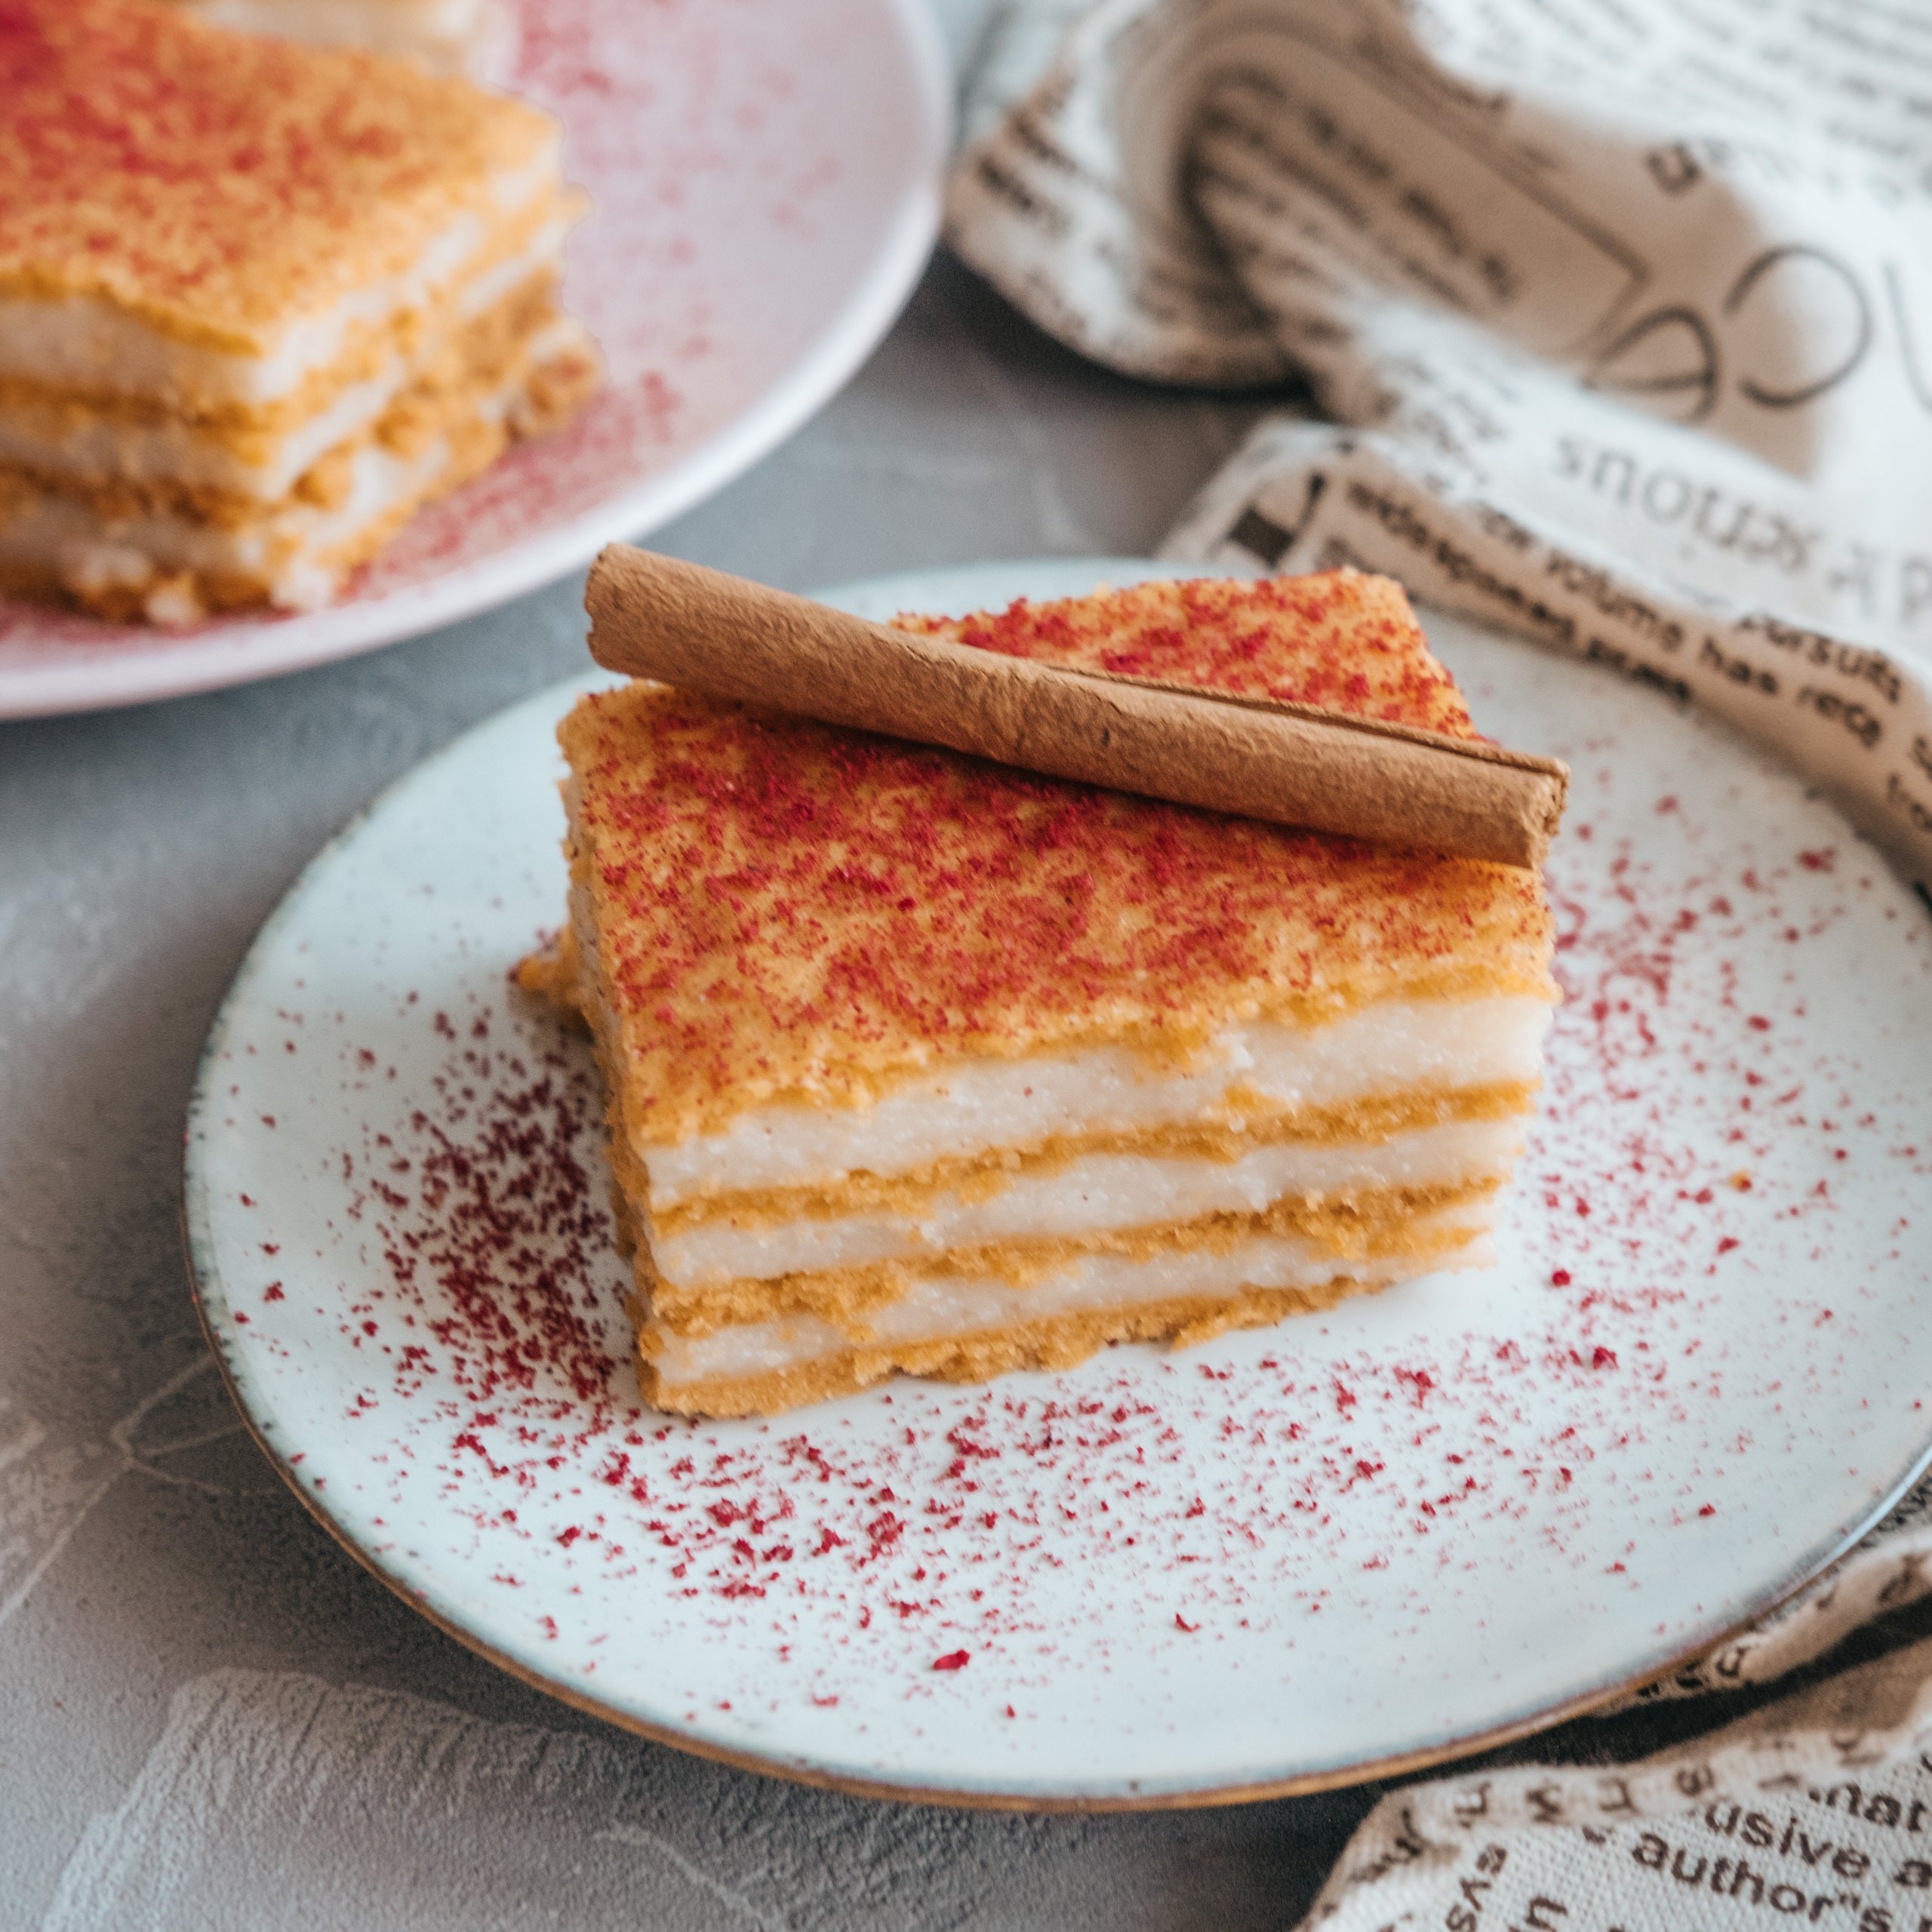 Eggless Rava Cake | Suji Ka Cake | Suji Cake Recipe by amitroy | Quick &  Easy Recipe | The Feedfeed